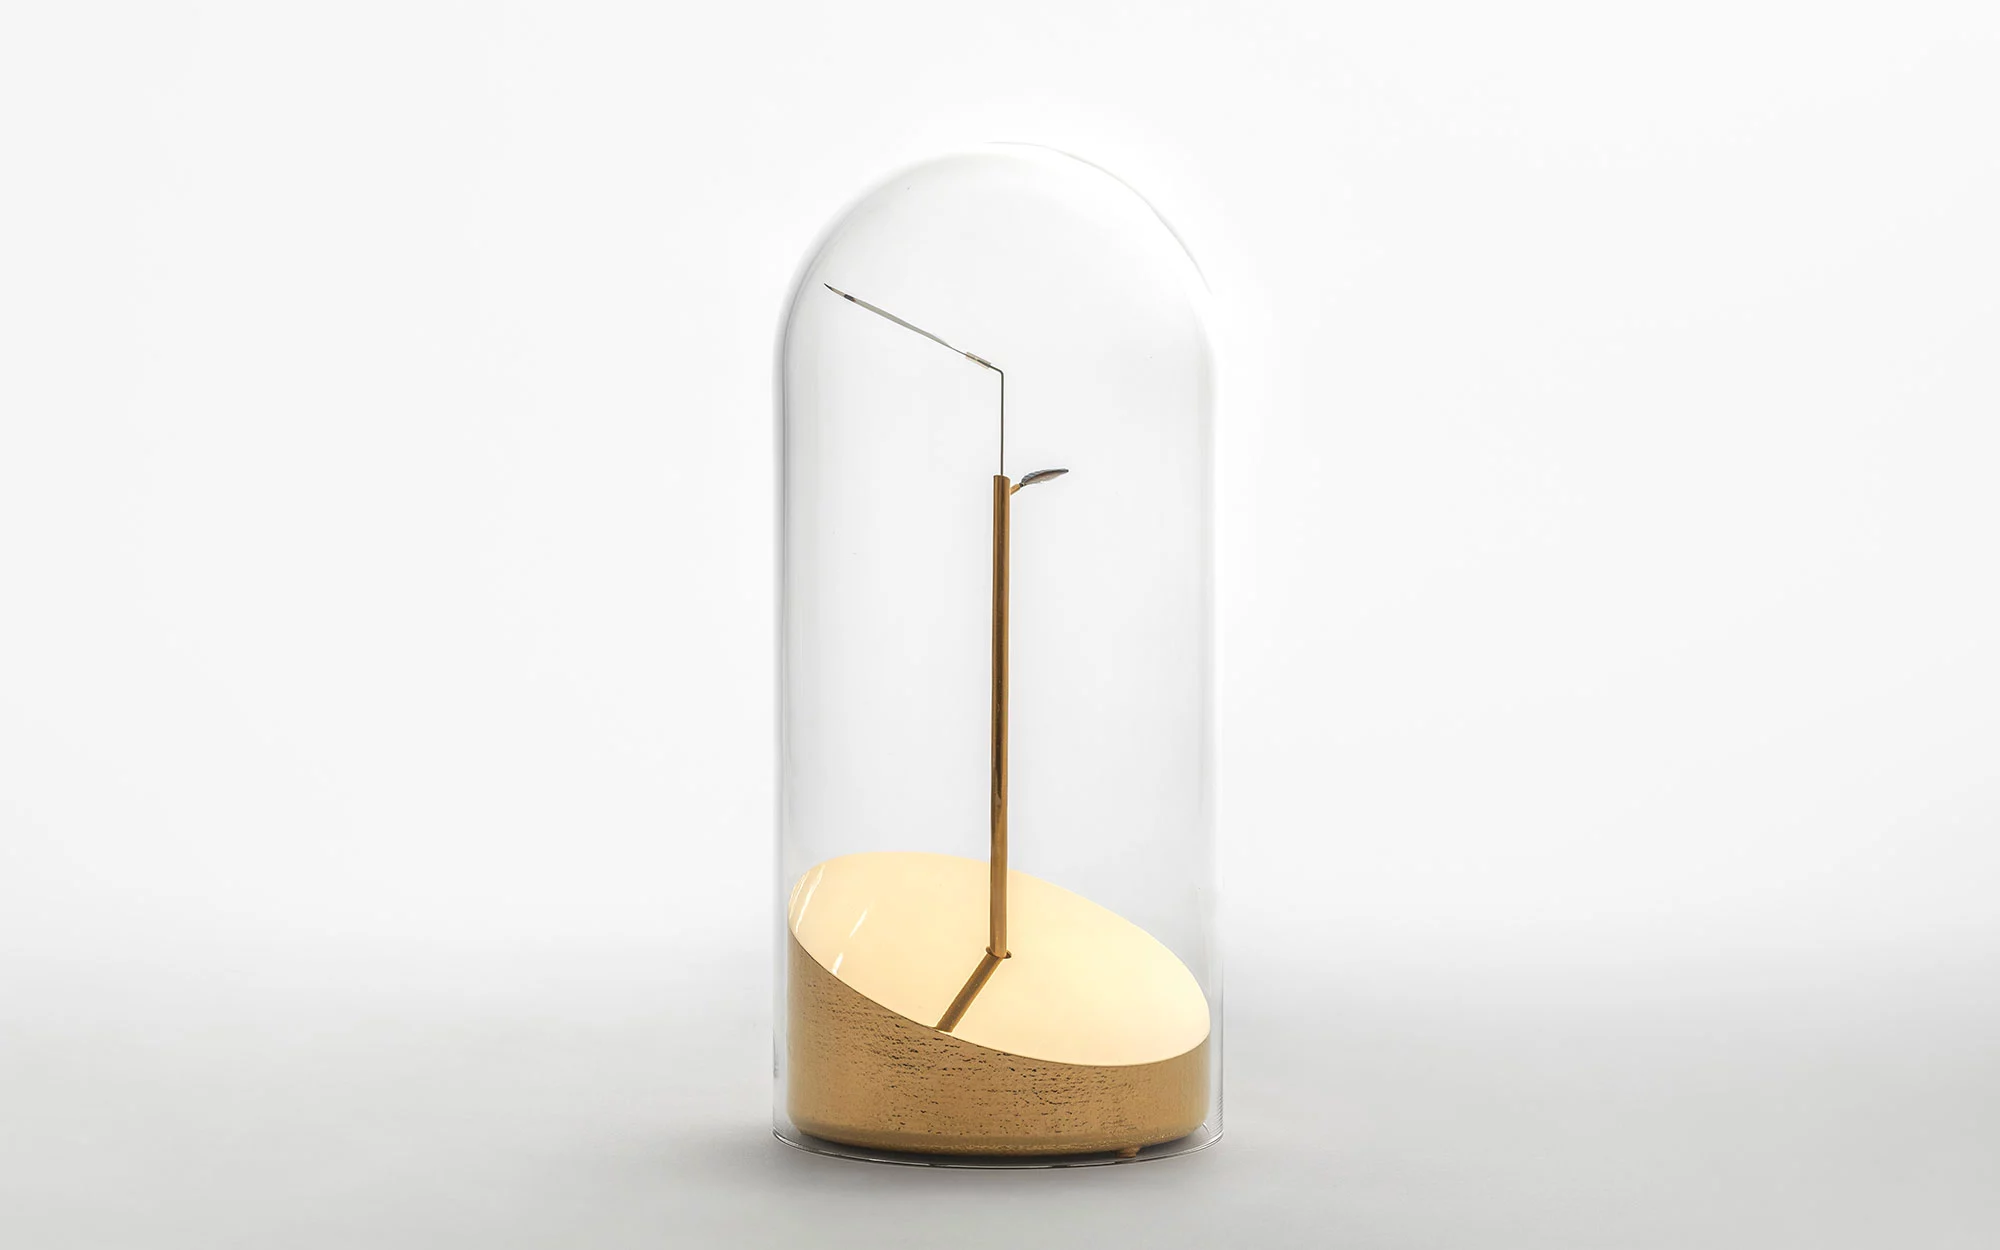 Time Flies - Studio Wieki Somers - Table light - Galerie kreo